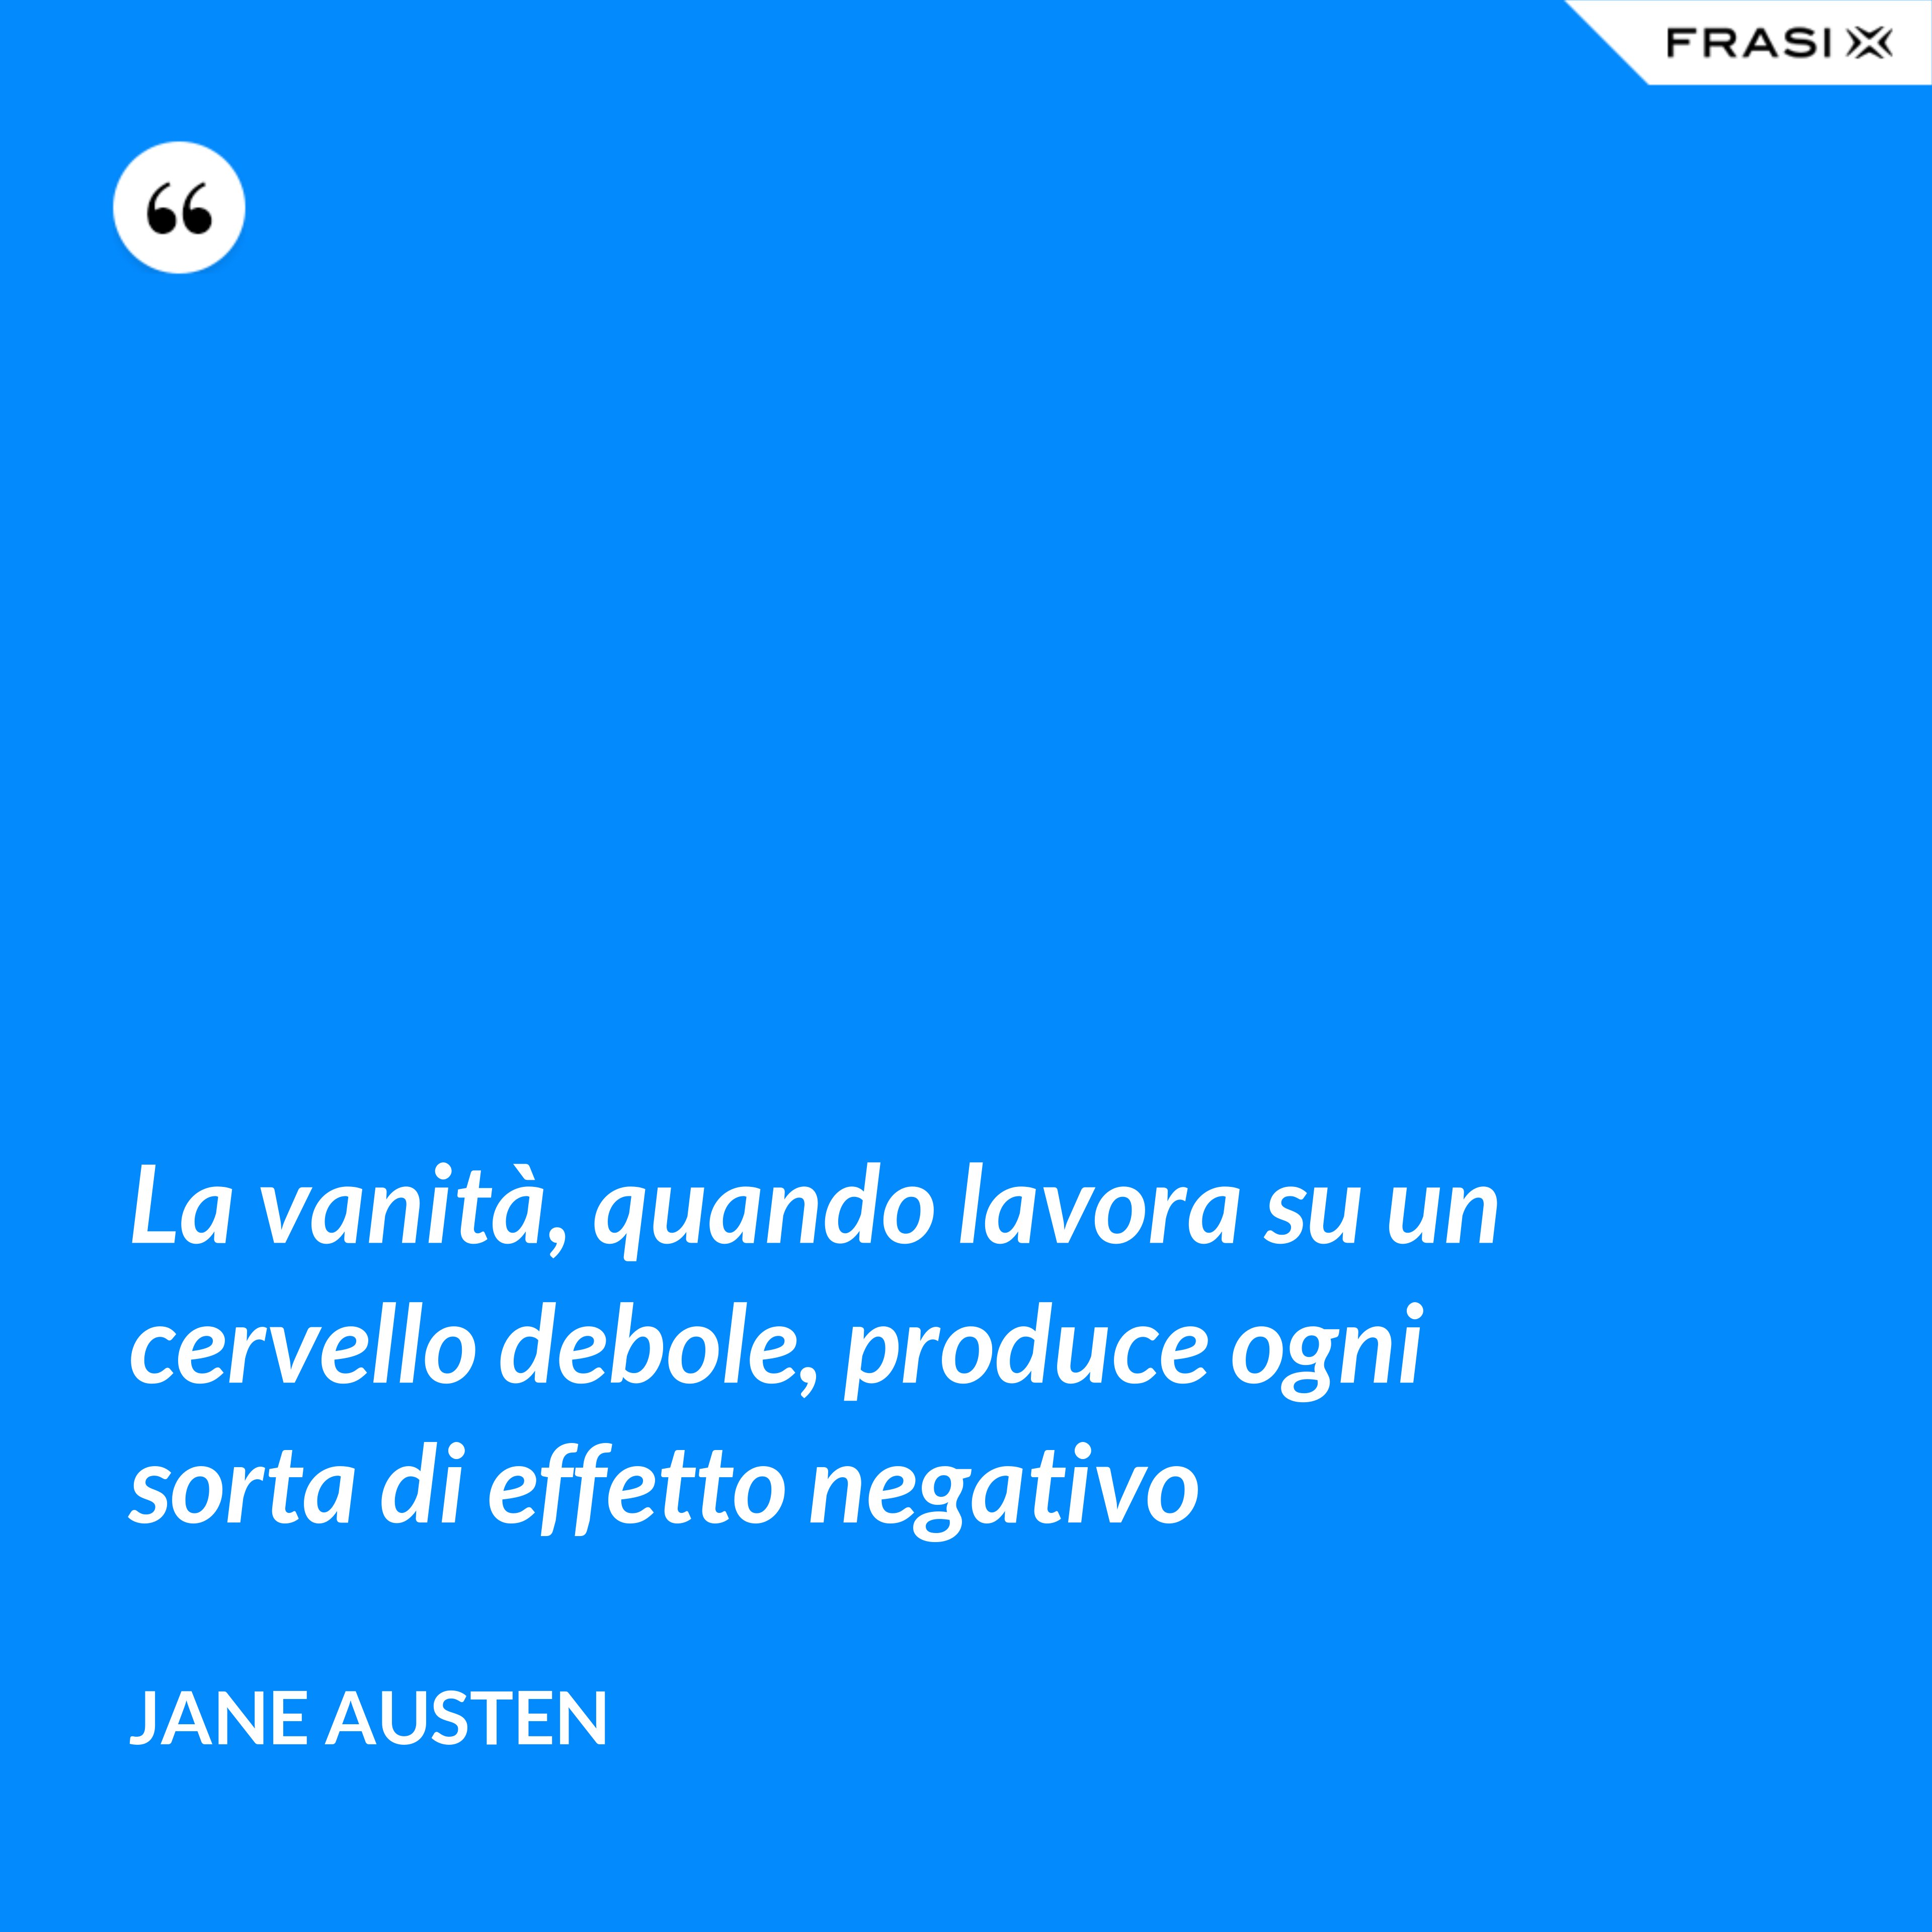 La vanità, quando lavora su un cervello debole, produce ogni sorta di effetto negativo - Jane Austen